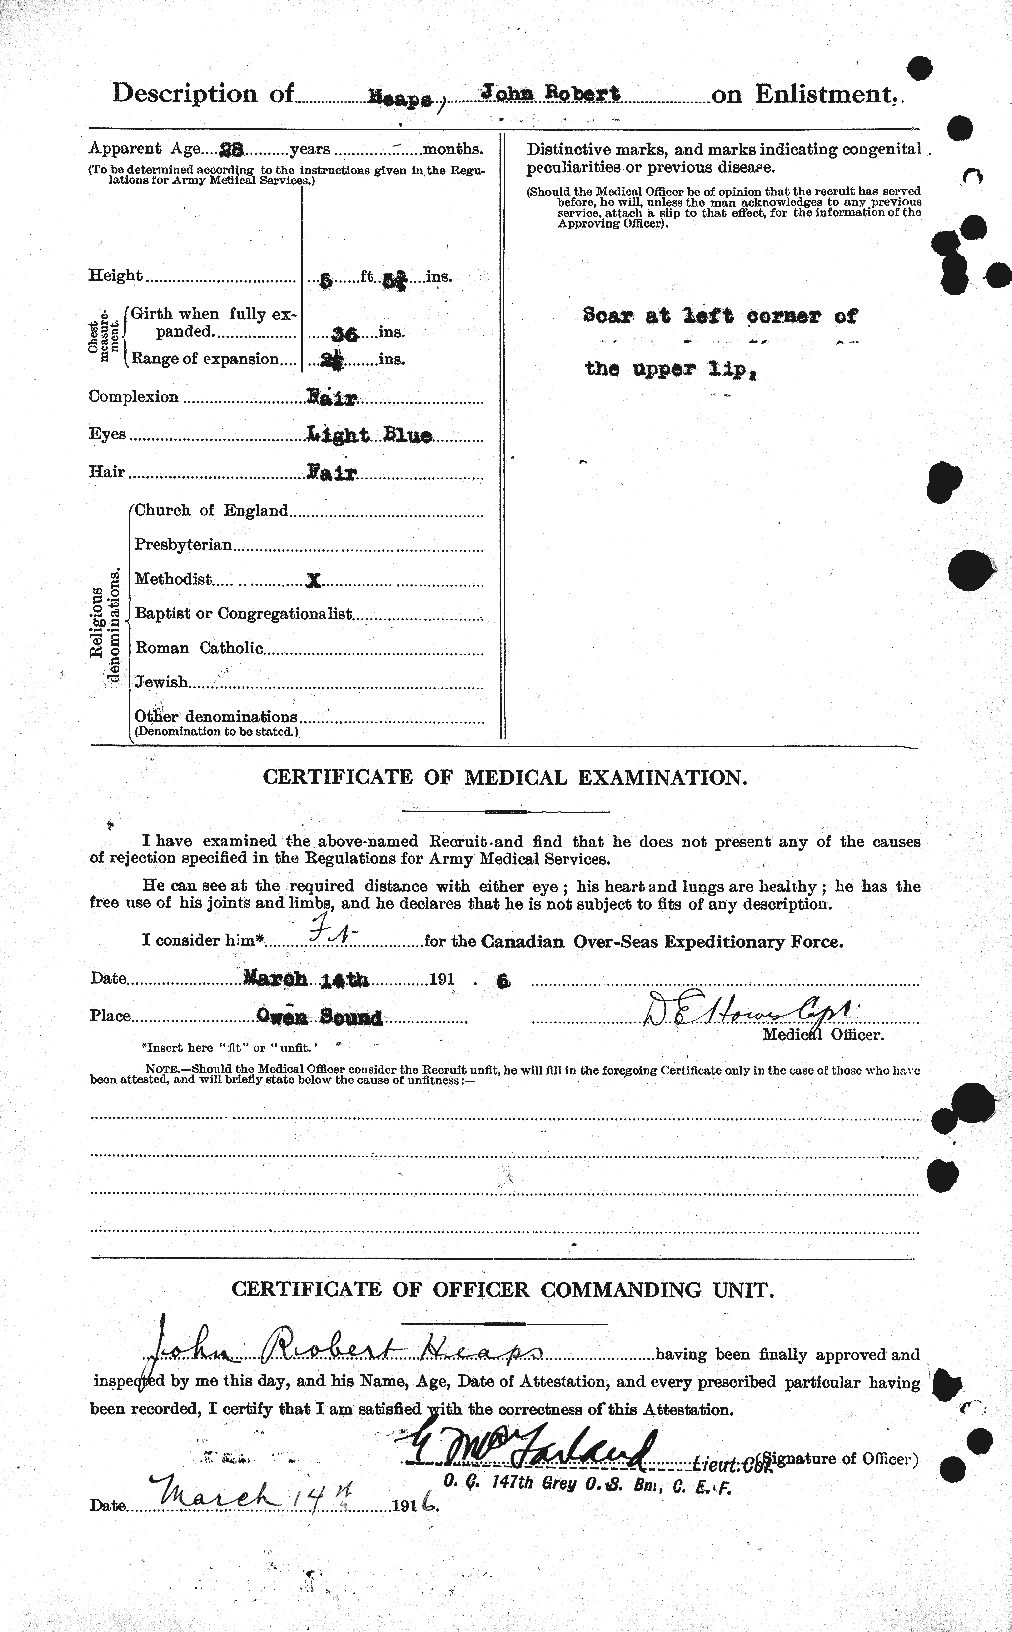 Dossiers du Personnel de la Première Guerre mondiale - CEC 383991b